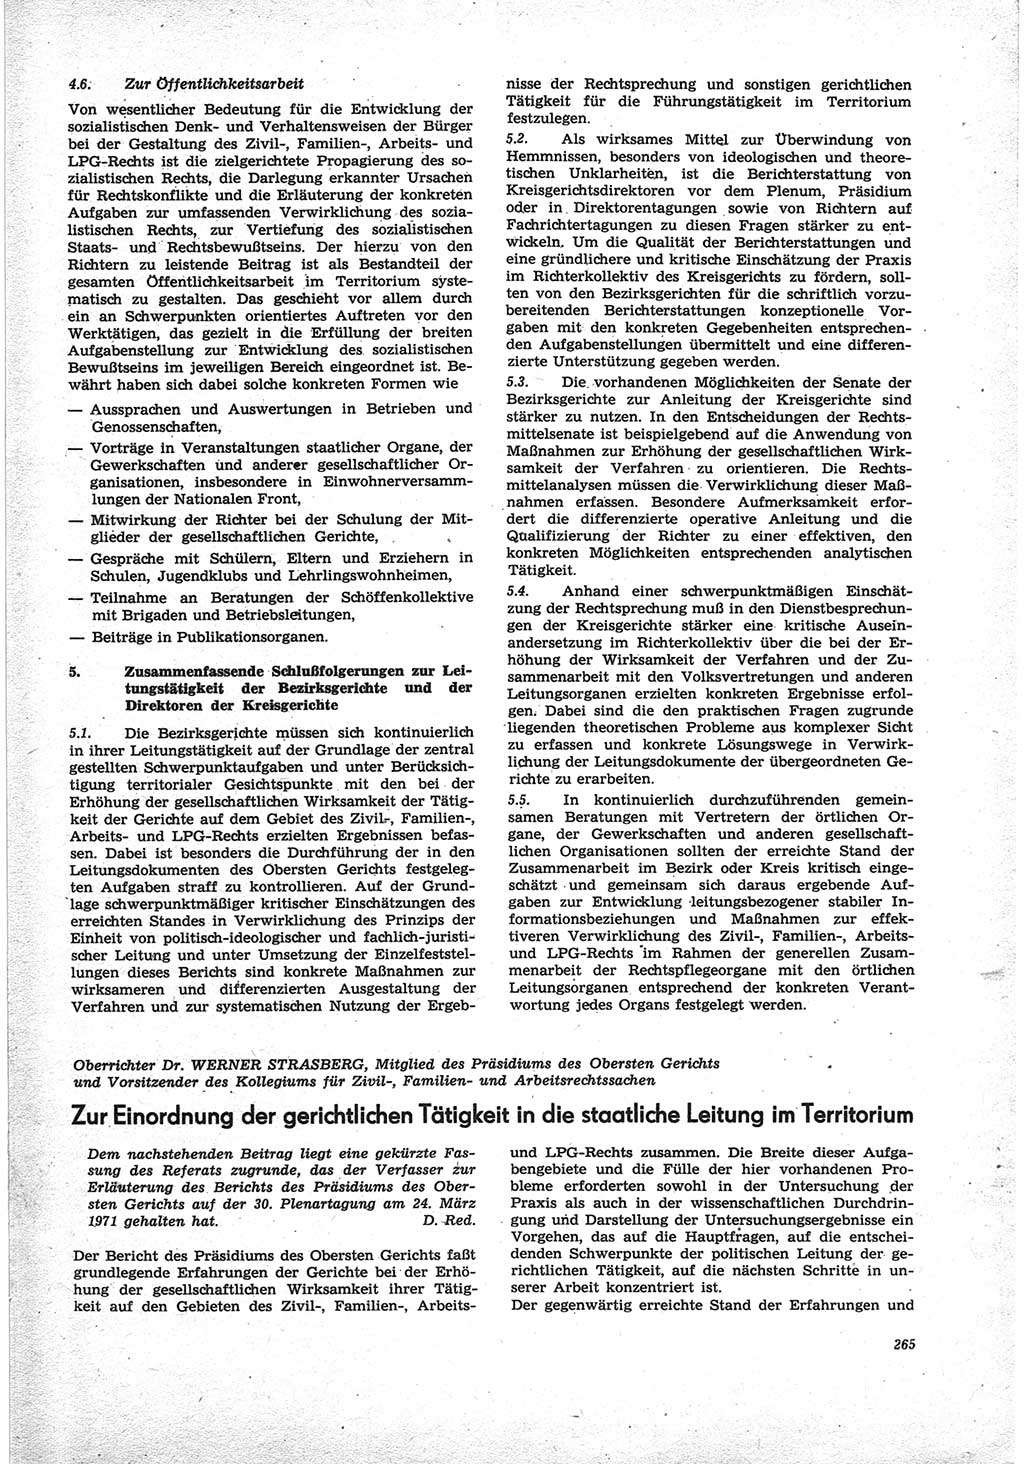 Neue Justiz (NJ), Zeitschrift für Recht und Rechtswissenschaft [Deutsche Demokratische Republik (DDR)], 25. Jahrgang 1971, Seite 265 (NJ DDR 1971, S. 265)